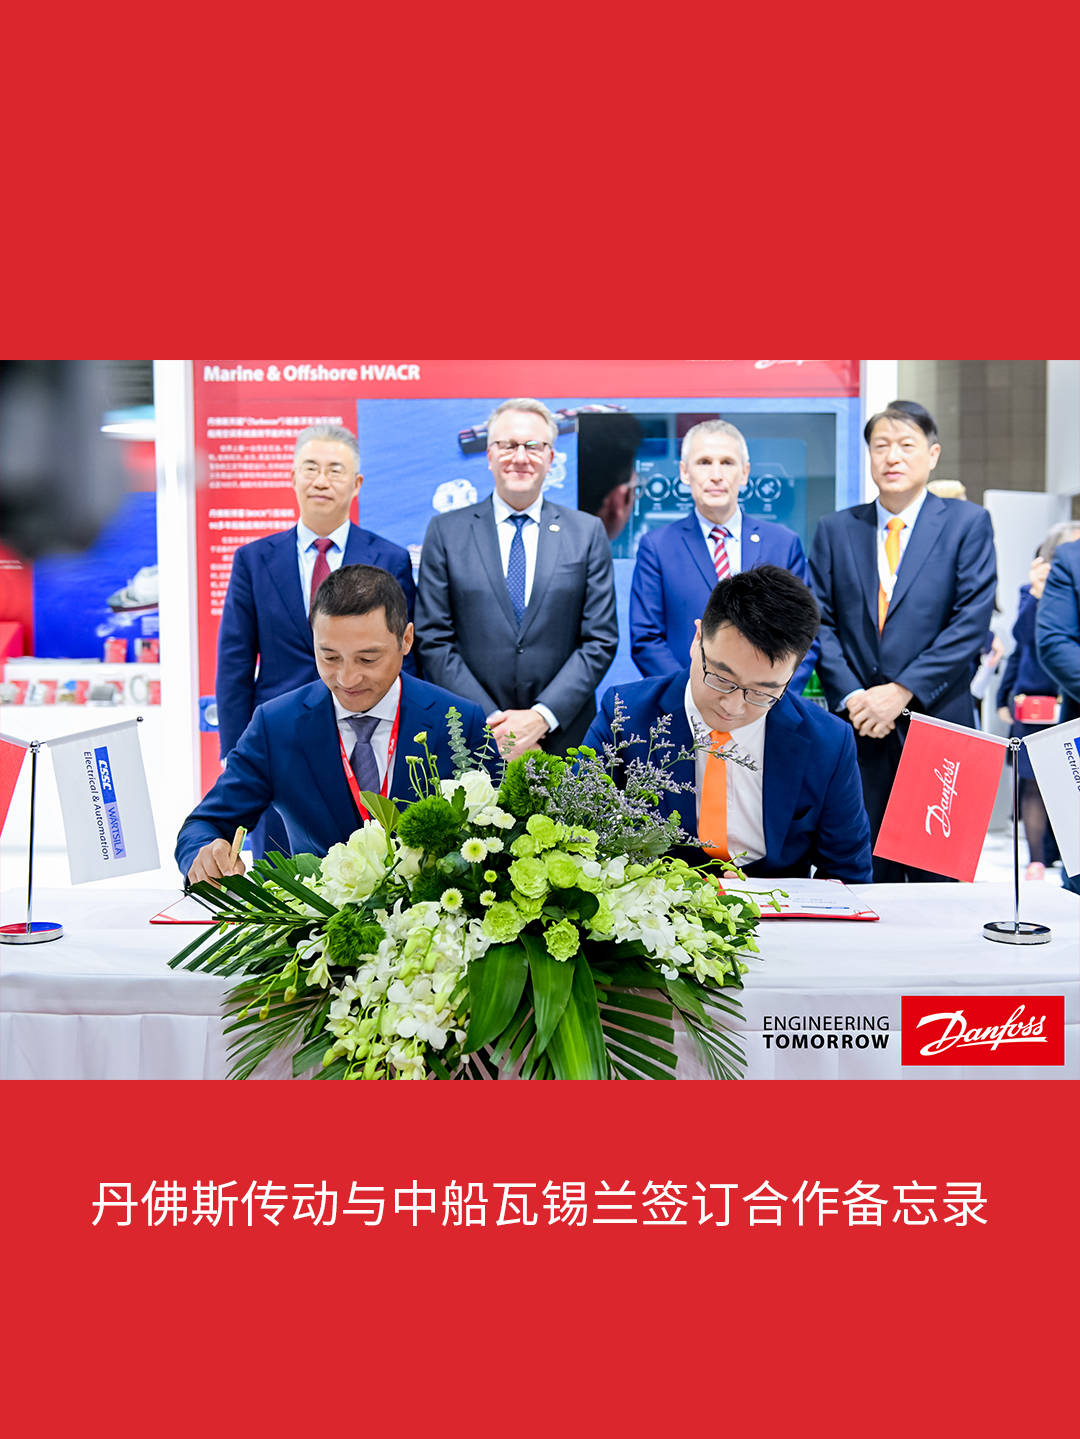 丹佛斯宣布与中船瓦锡兰电气自动化（上海）有限公司签订合作备忘录